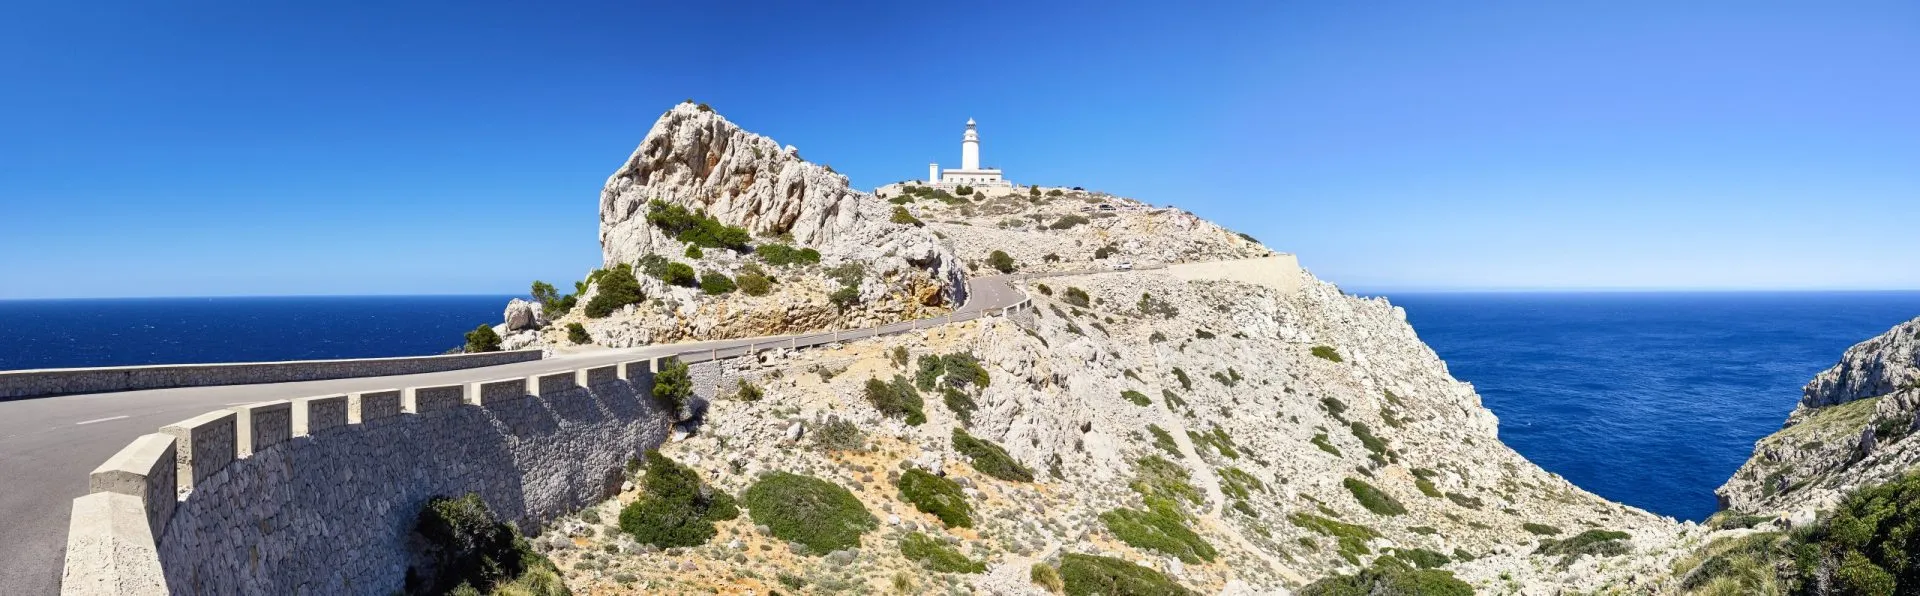 Maiorca - Panorama Cap Formentor